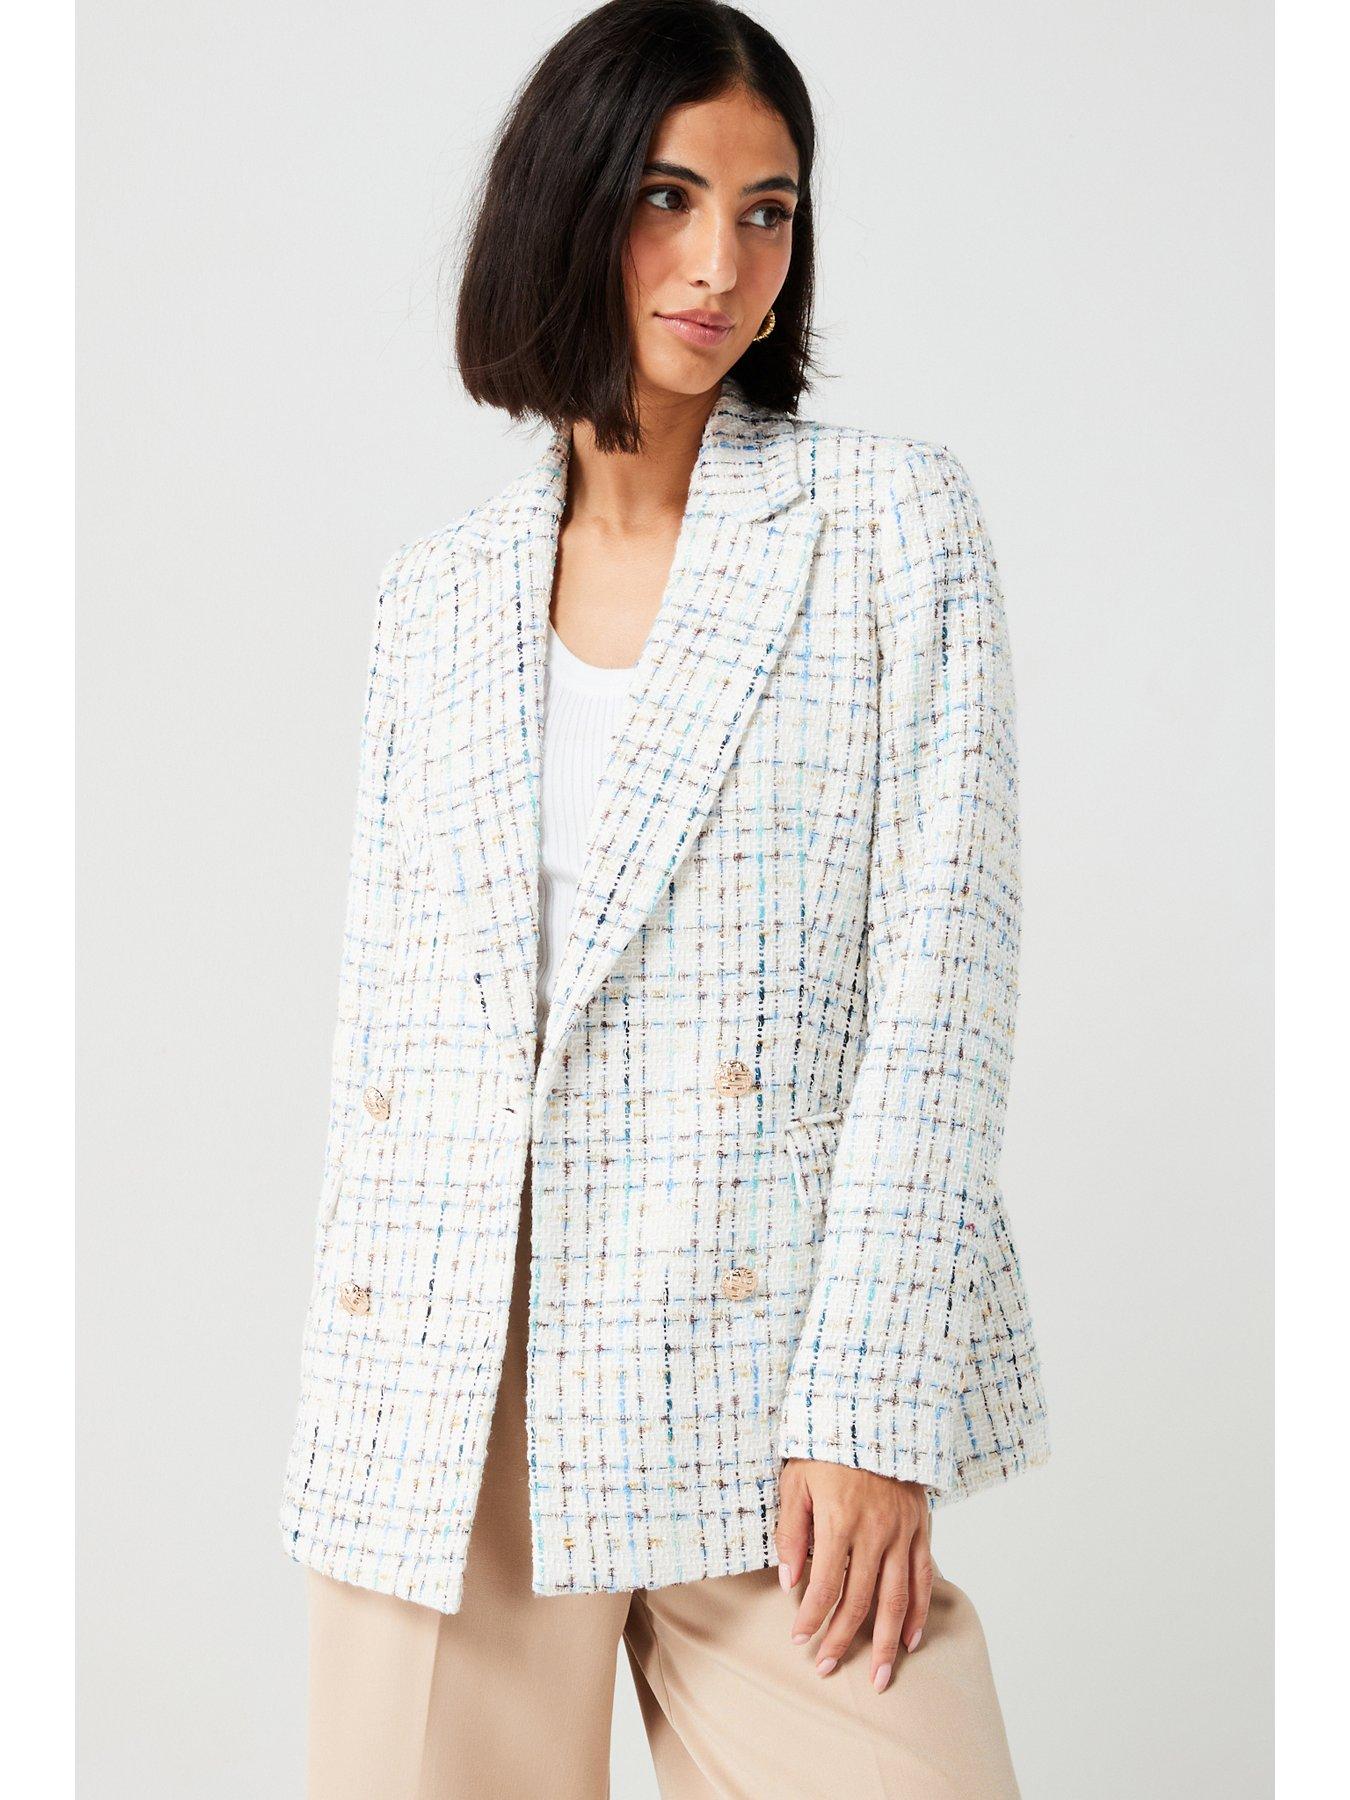 Blazers, V by very, Coats & jackets, Women